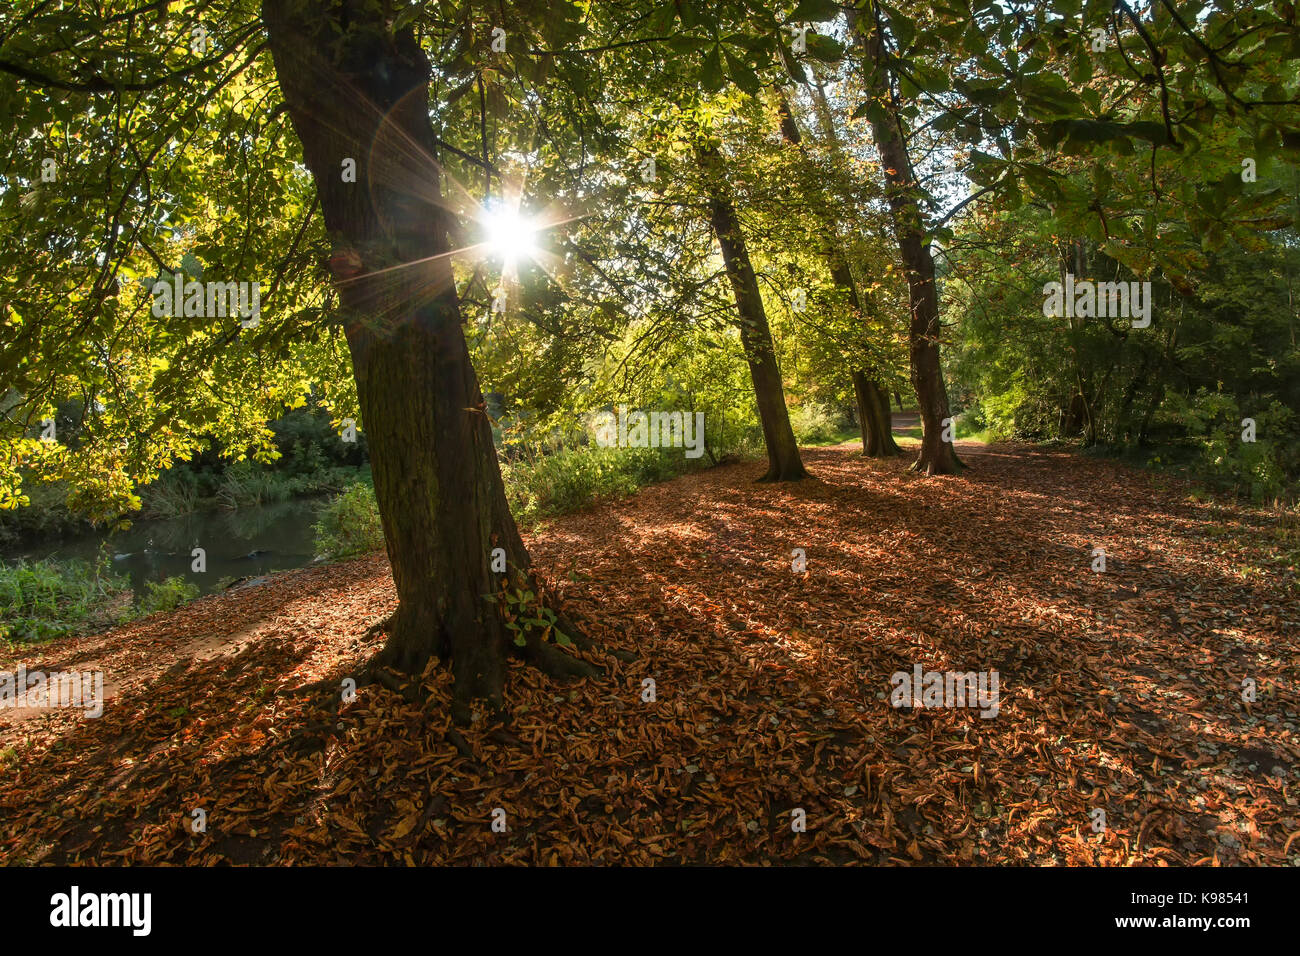 September sunshine Streaming durch Rosskastanie Bäume im Kran Park, Twickenham, England. Schöne Herbstfarben Laub auf dem Boden liegen. Stockfoto